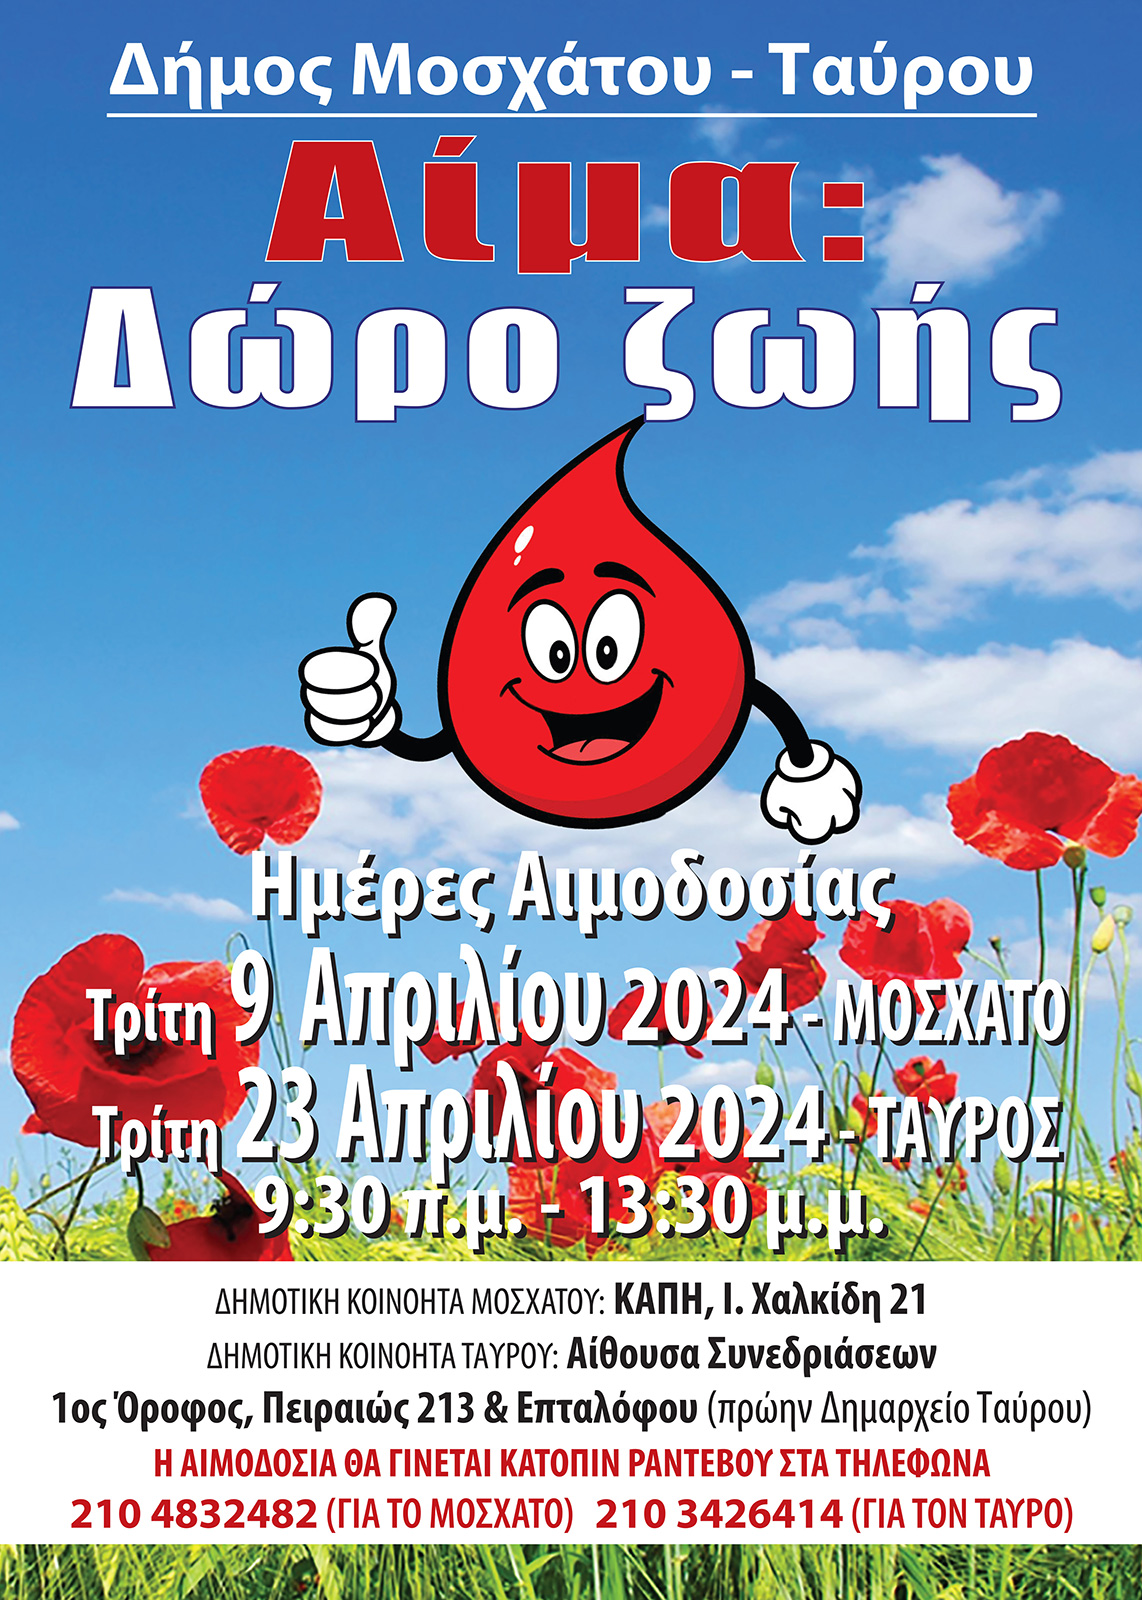 Εθελοντική αιμοδοσία διοργανώνει ο Δήμος Μοσχάτου- Ταύρου, στις 9 & 23 Απριλίου για την ενίσχυση της Δημοτικής Τράπεζας Αίματος